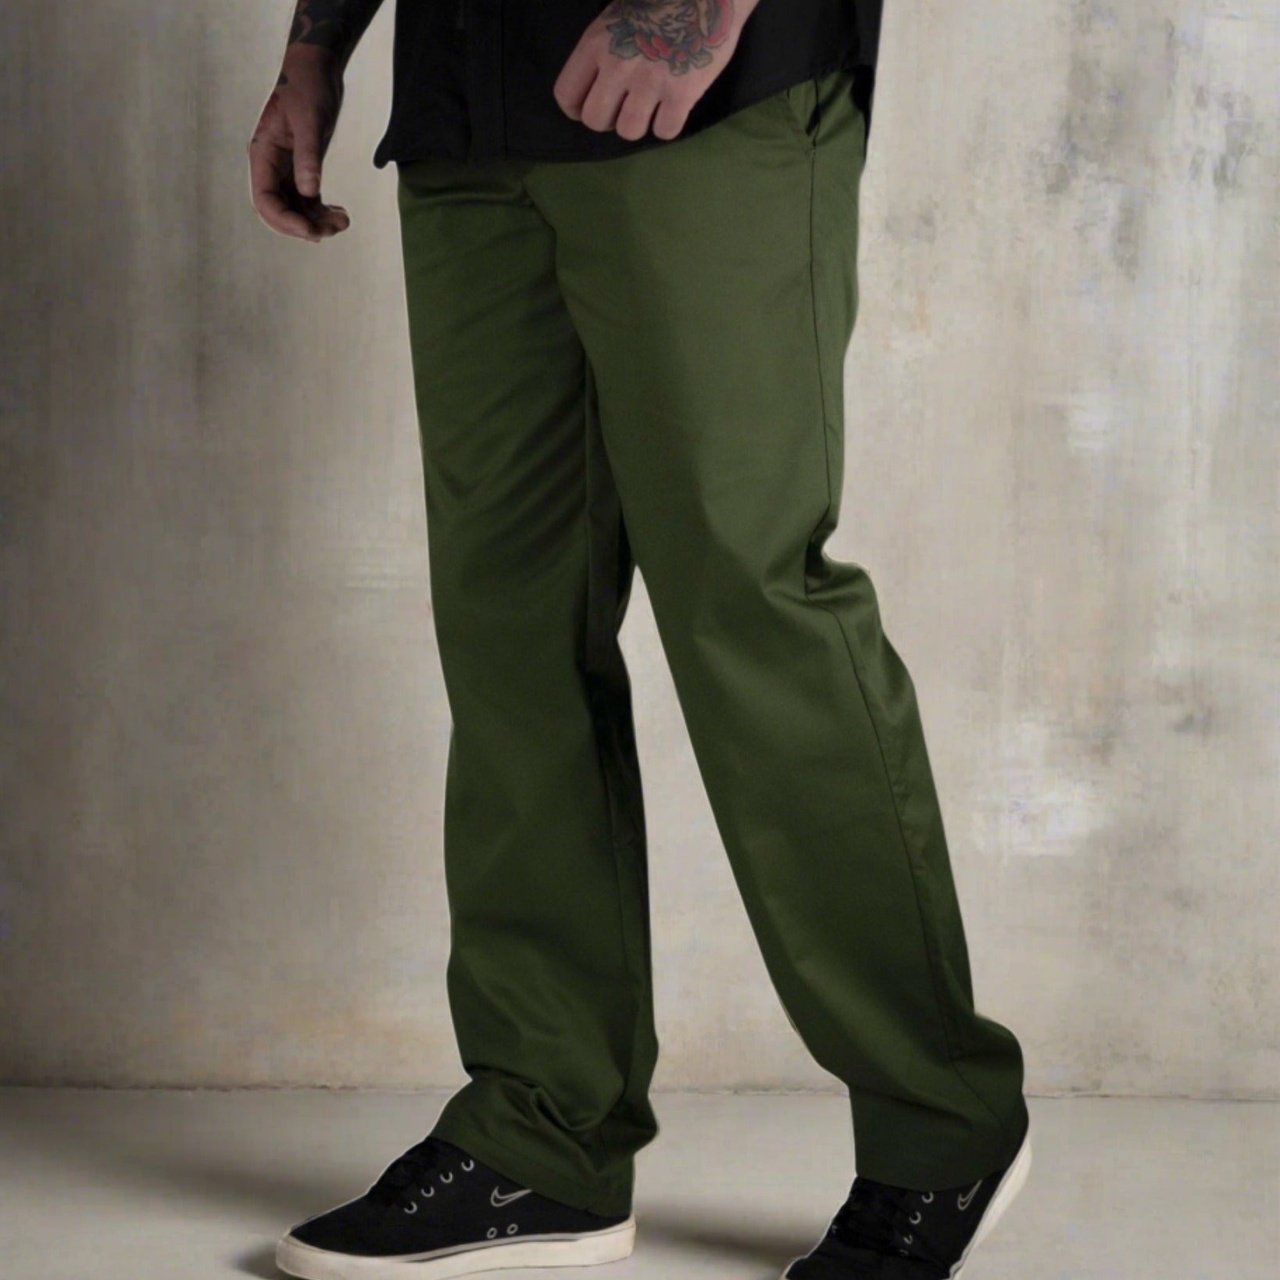 Mens Green Chino Pants - Rebel Reaper Clothing Company Chino Pants